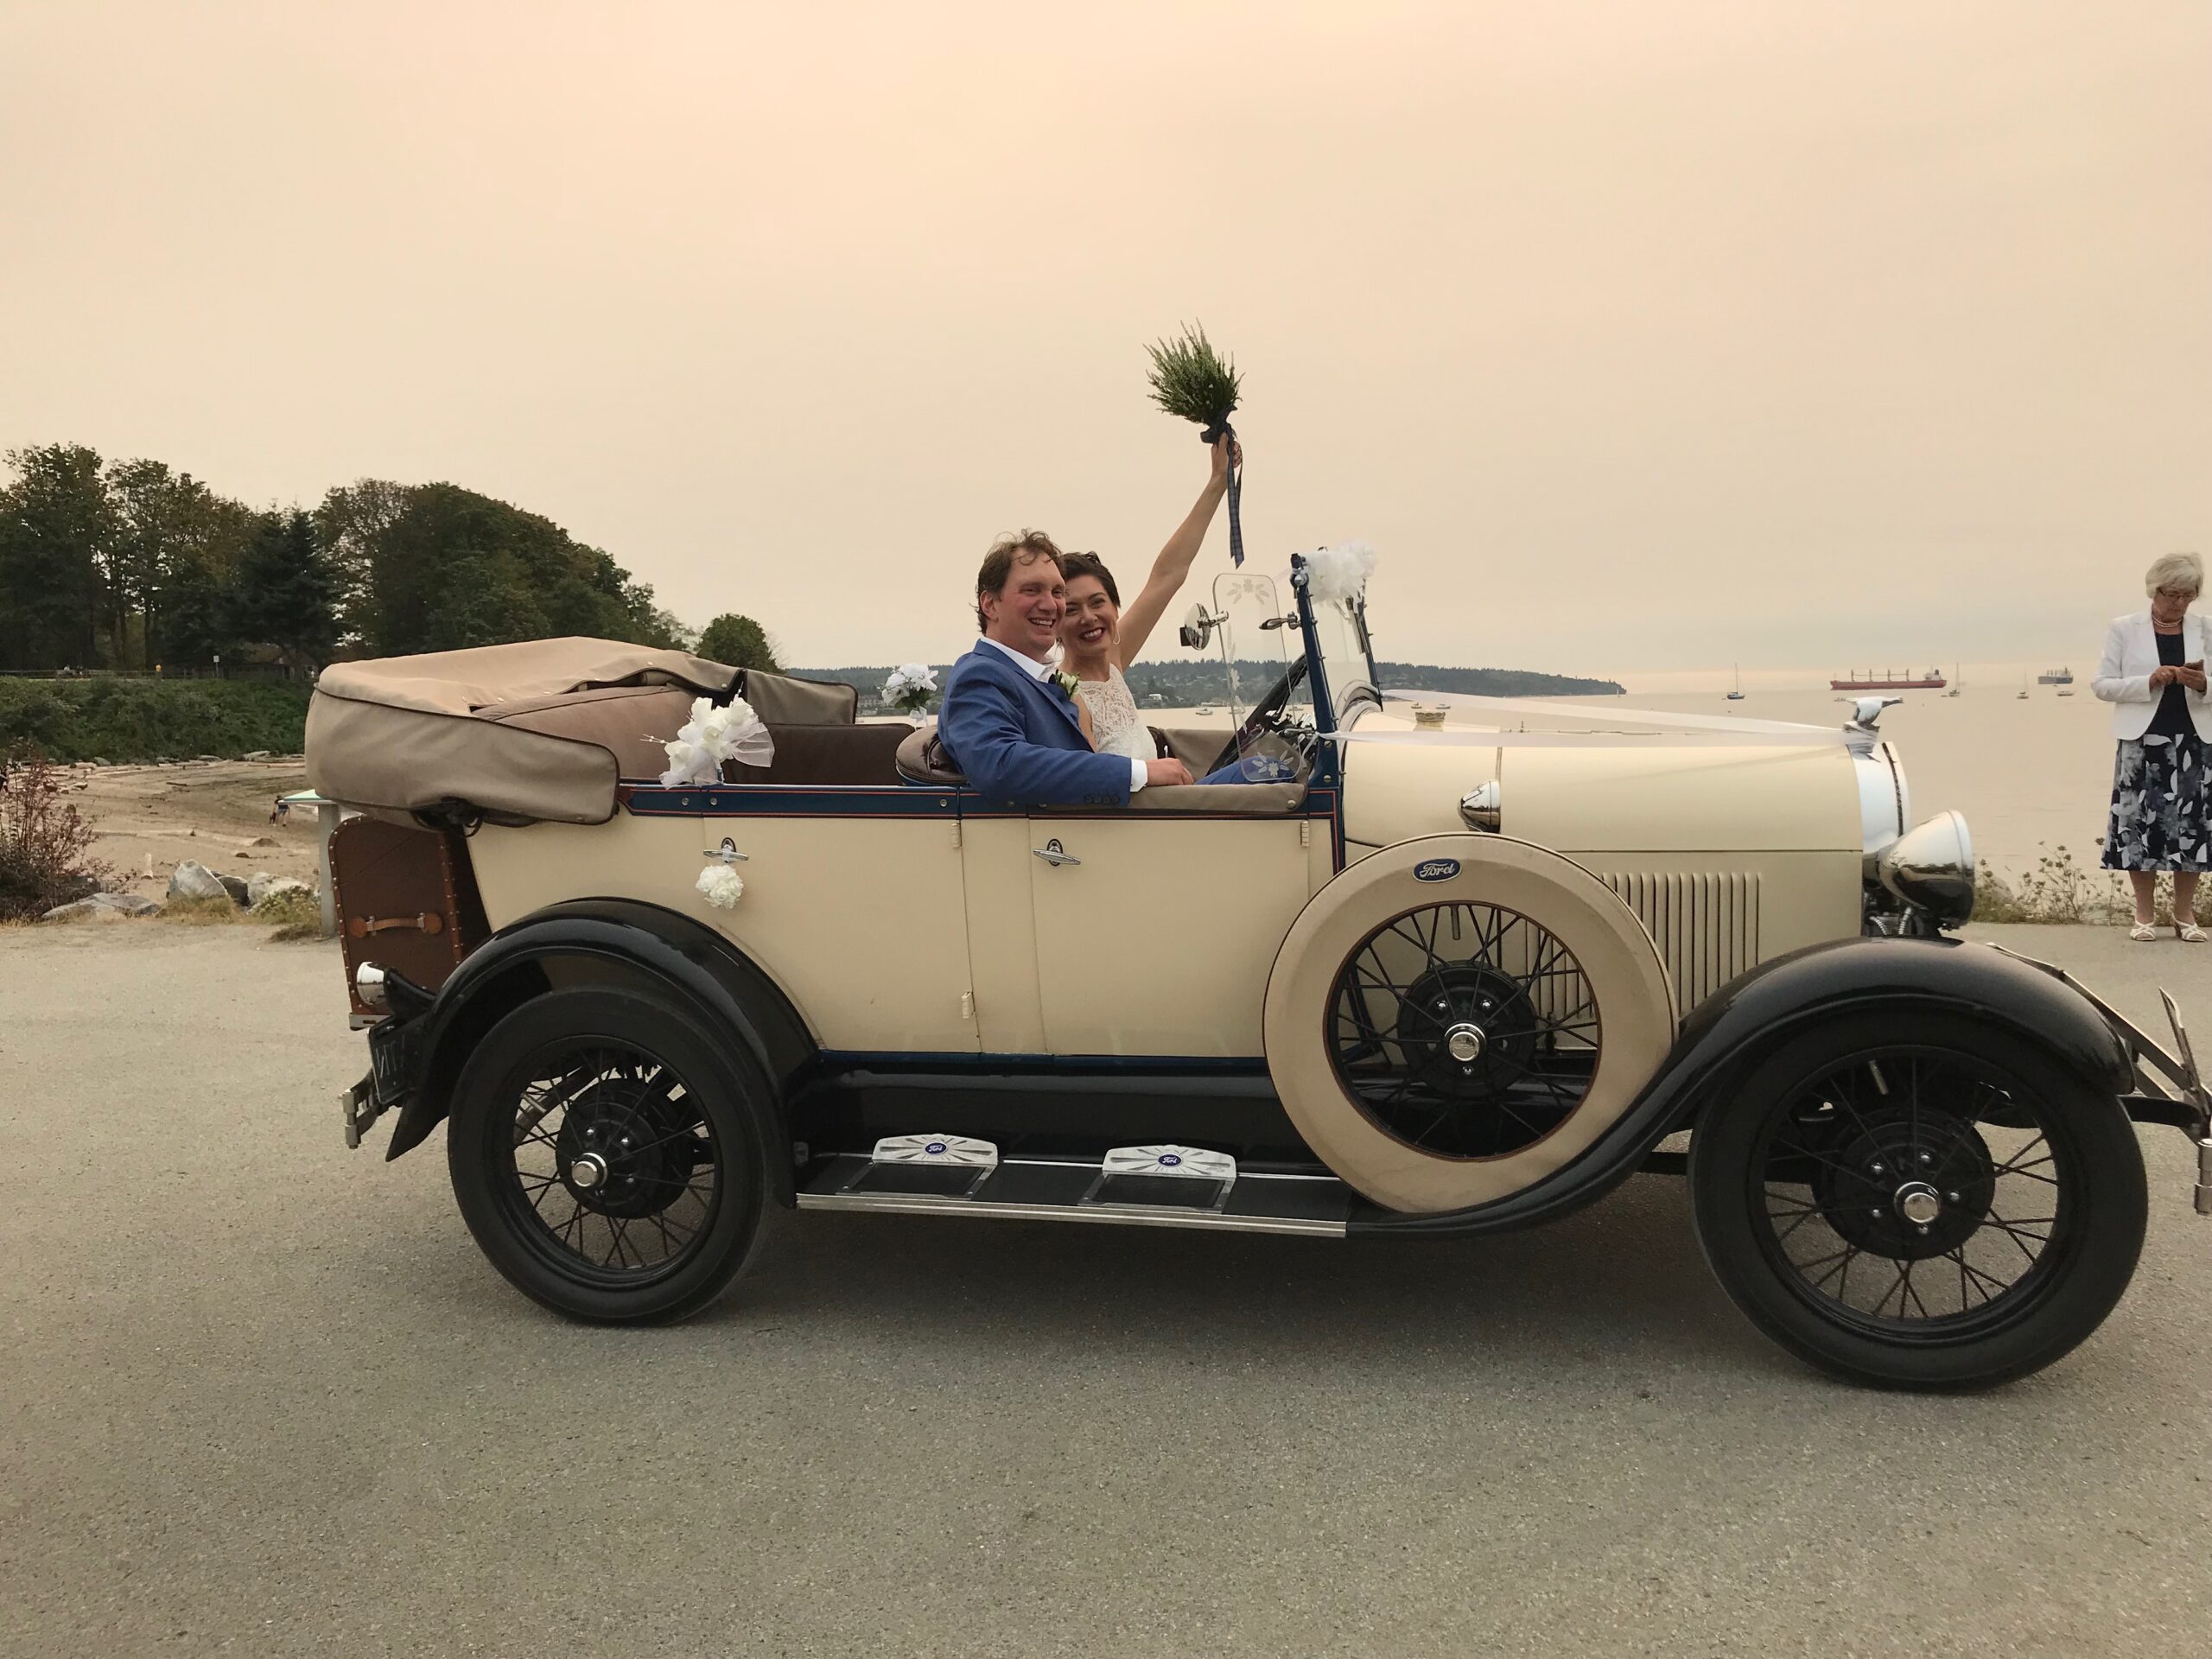 Vintage Antique Car for Wedding